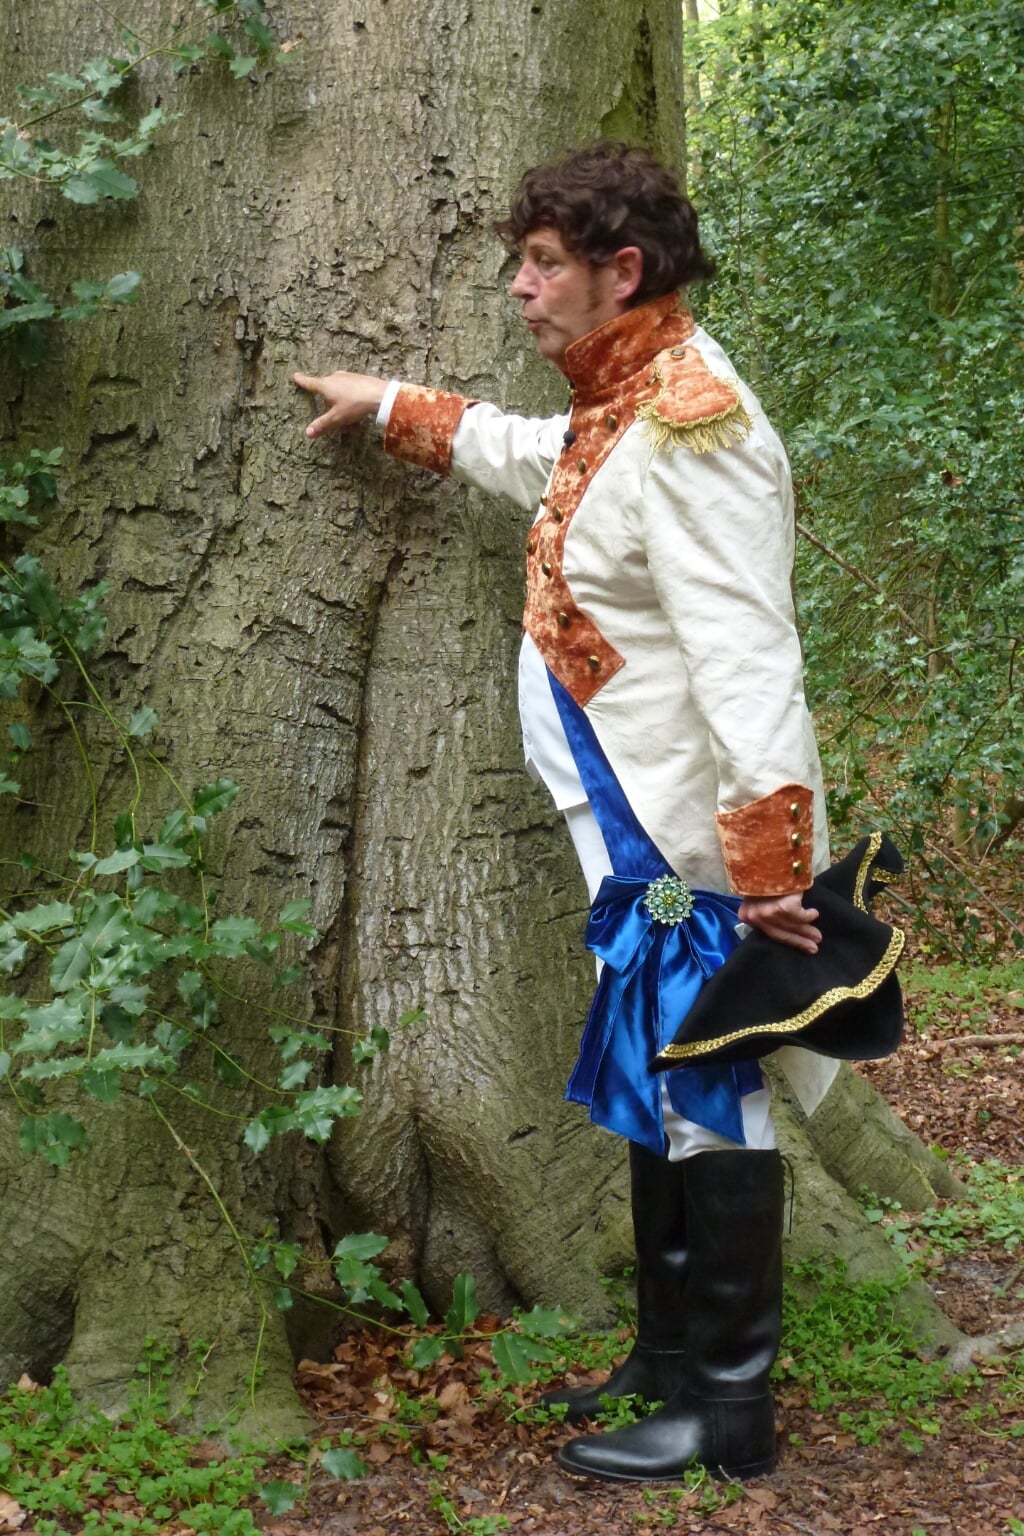 Acteur Charles Perukel als Lodewijk Napoleon wijst naar het kroontje op 25 april 2014 (Lodewijk Napoleon-dag).